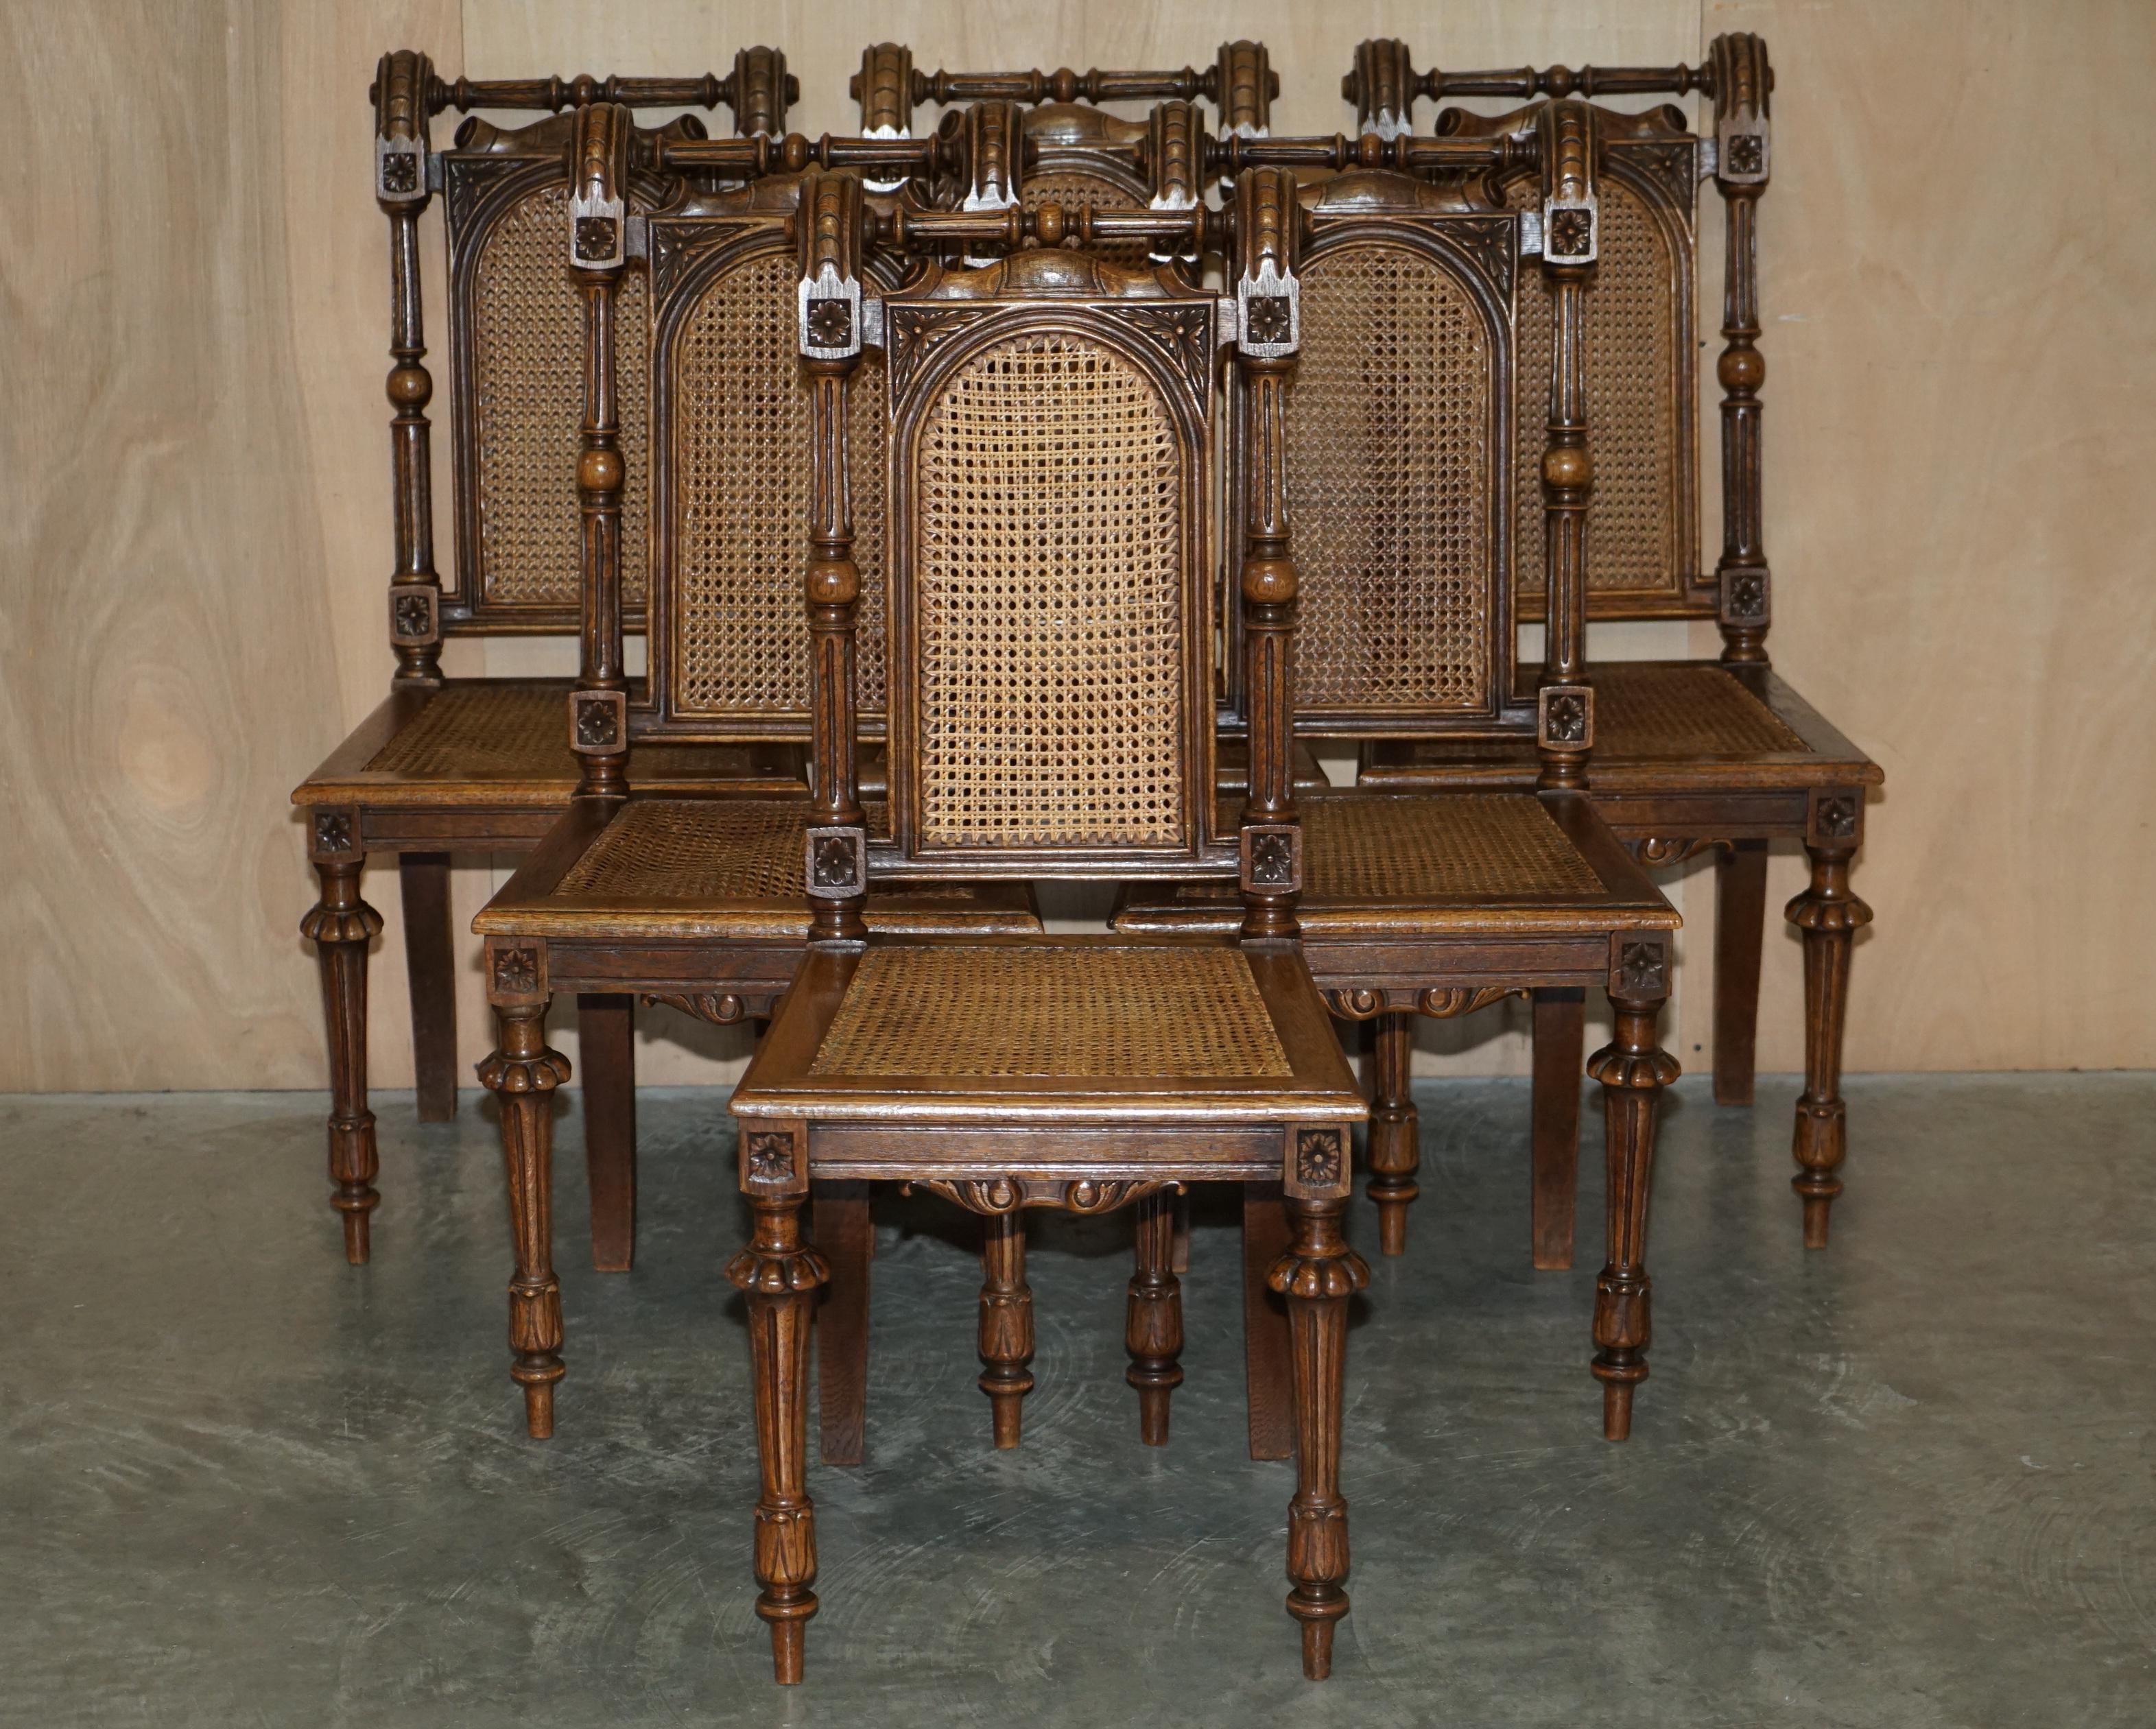 Wir freuen uns, diese schöne Suite von sechs Jacobean Revival handgeschnitzten Nussbaum Esszimmerstühle mit Bergere Sitze und Rückenlehnen zum Verkauf anbieten zu können.

Eine sehr gut aussehende und gut gemachte Sitzgruppe, ca. 1840-1860, aber